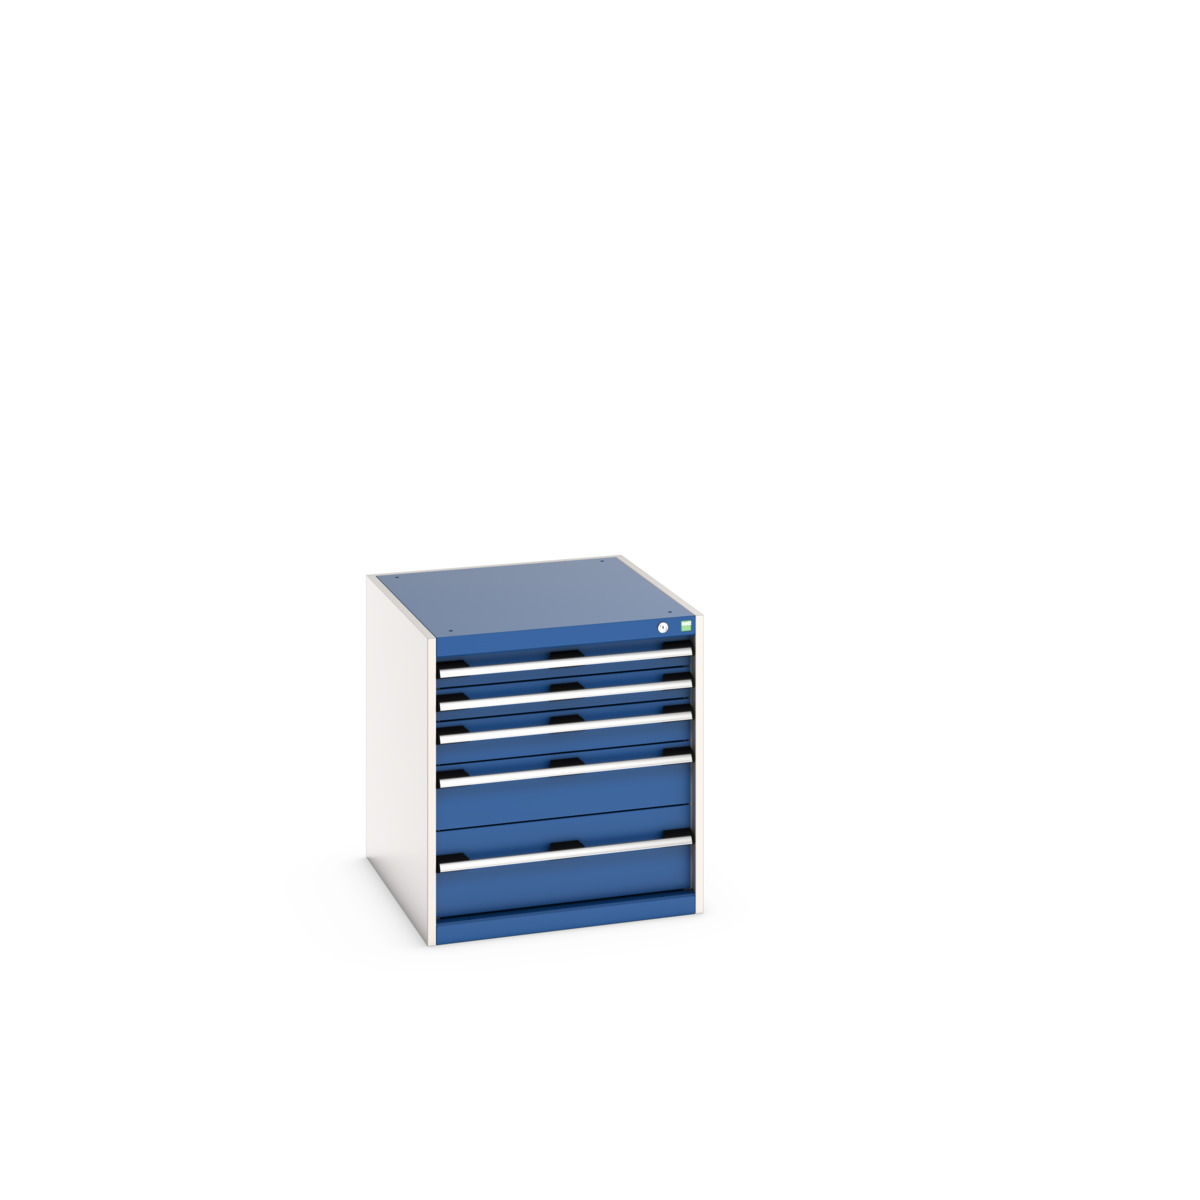 40027007.11V - cubio drawer cabinet